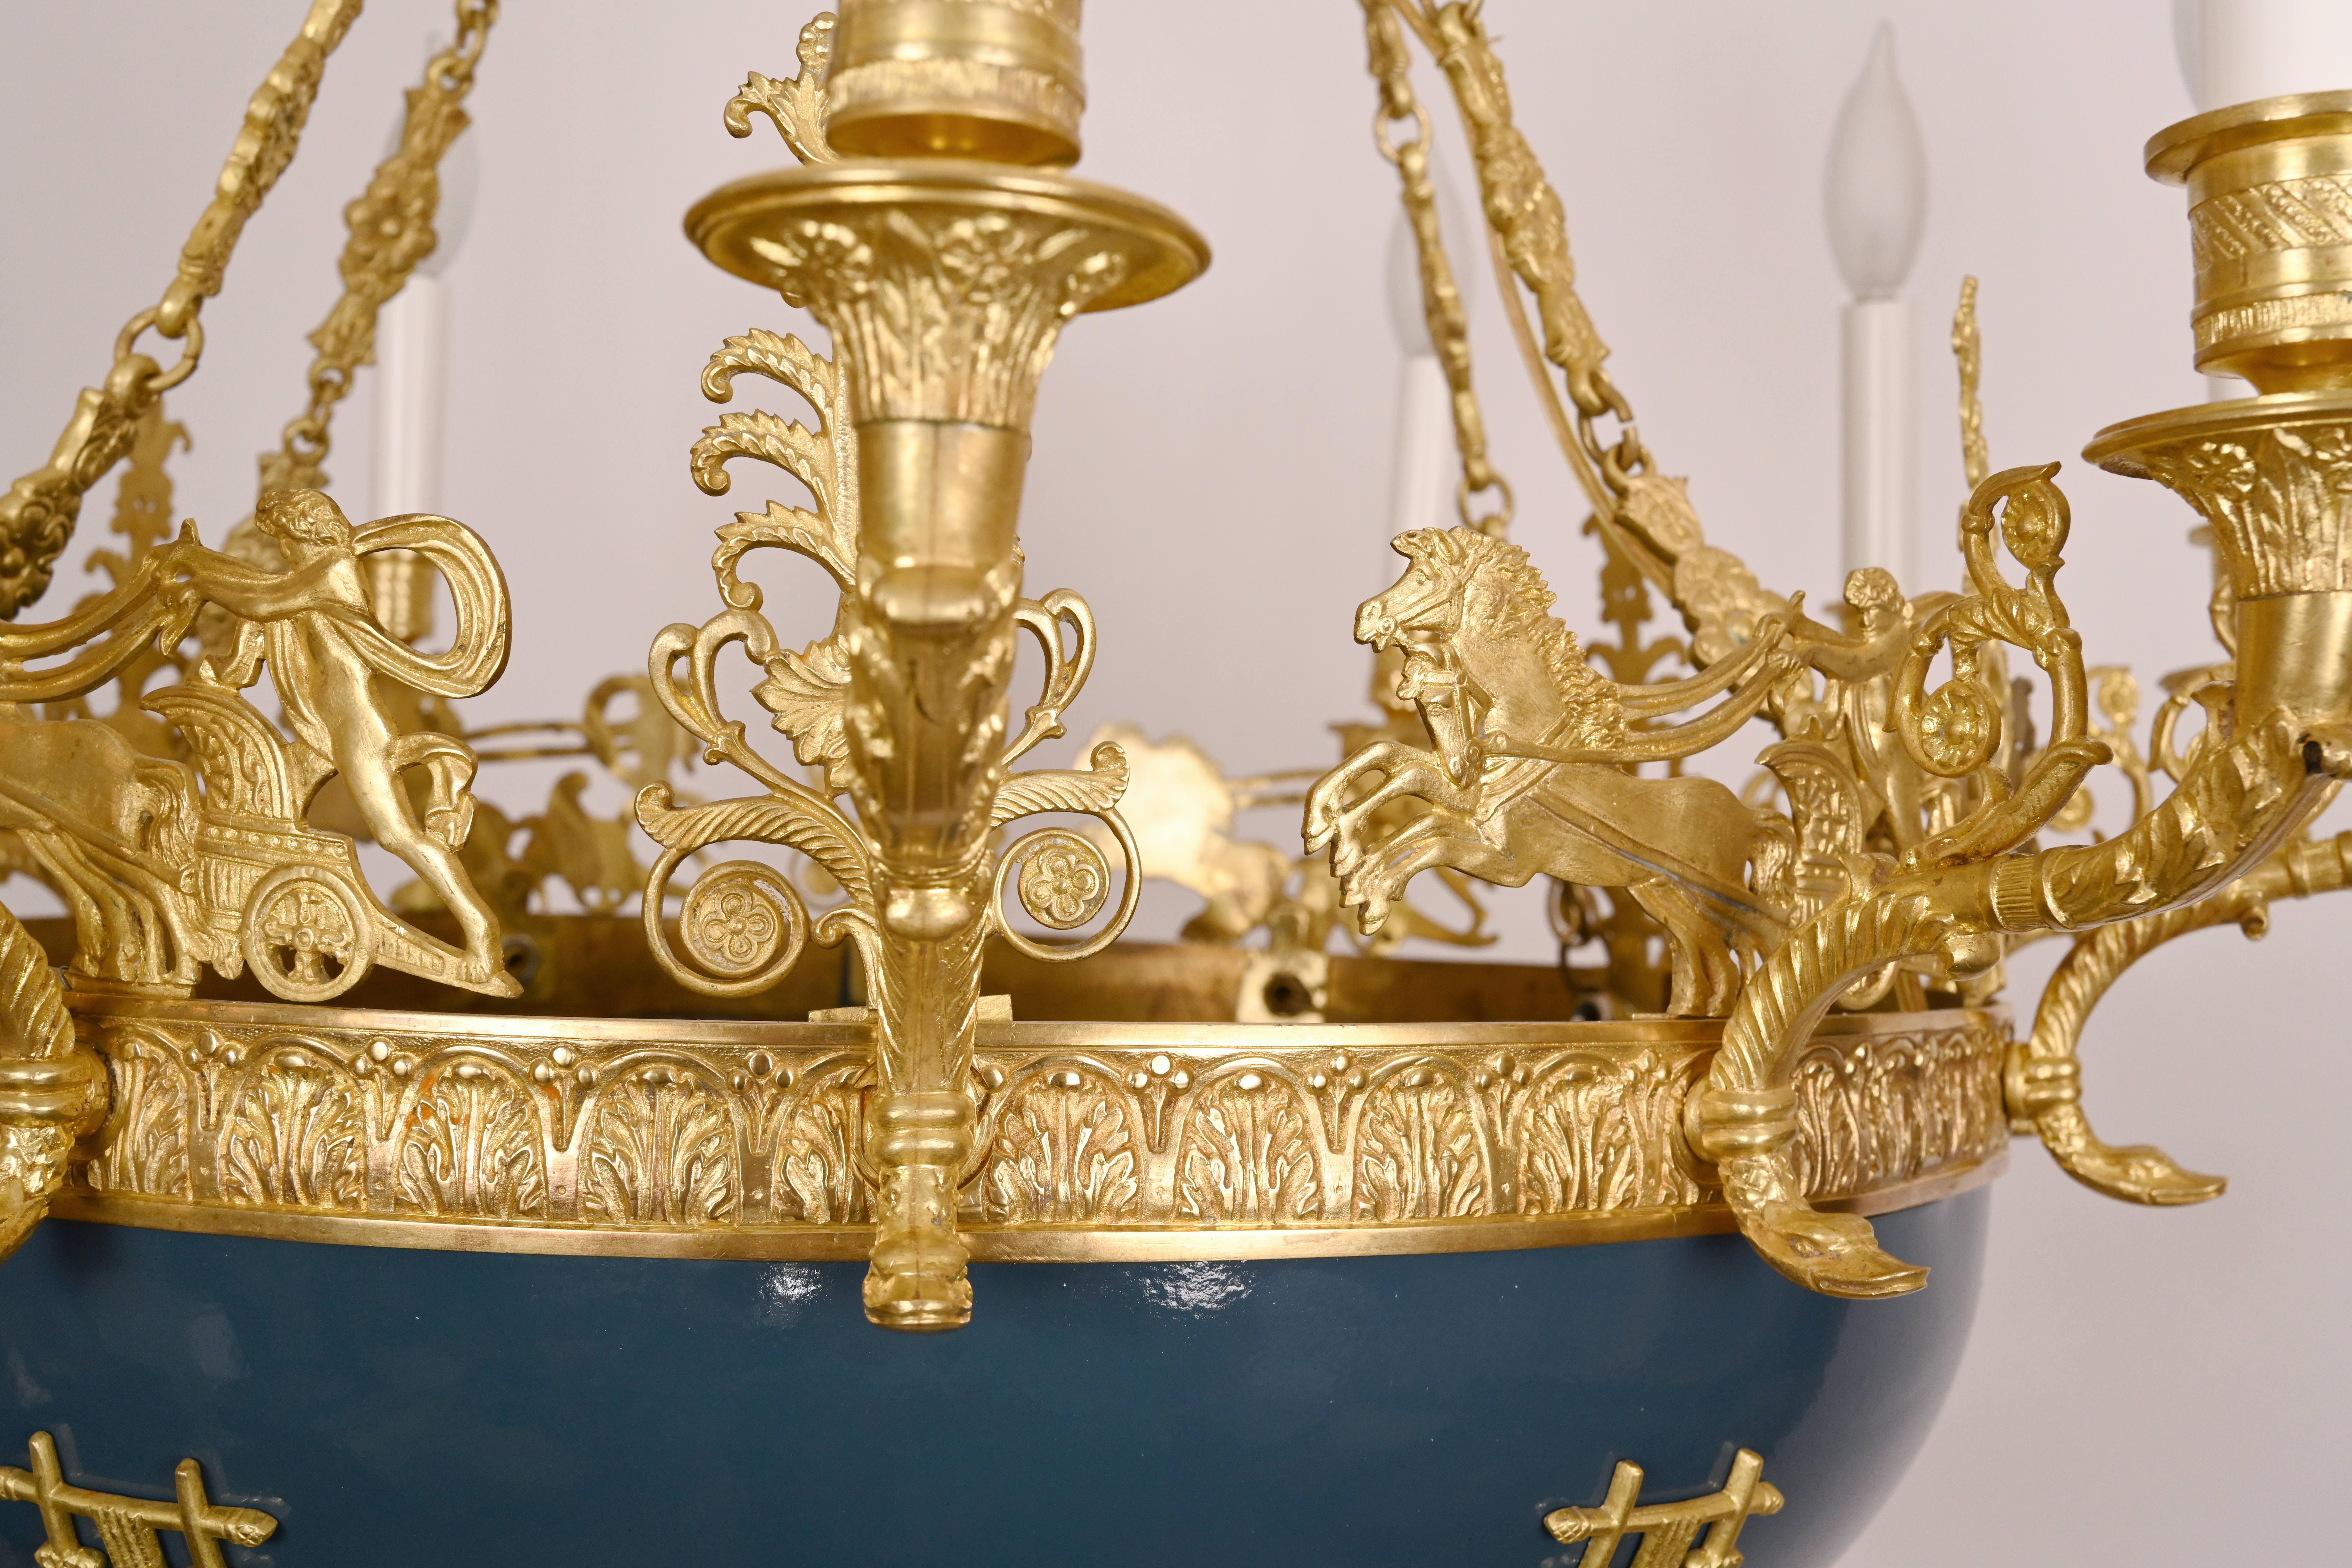 Französischer Kronleuchter im Empire-Stil mit blau bemalter Schale, Bronzebeschlägen im Empire-Stil und detaillierten Wagenlenkern aus Bronzeguss, aufgehängt an einer Bronzekette und einem kronenförmigen Baldachin, um 1880.
 